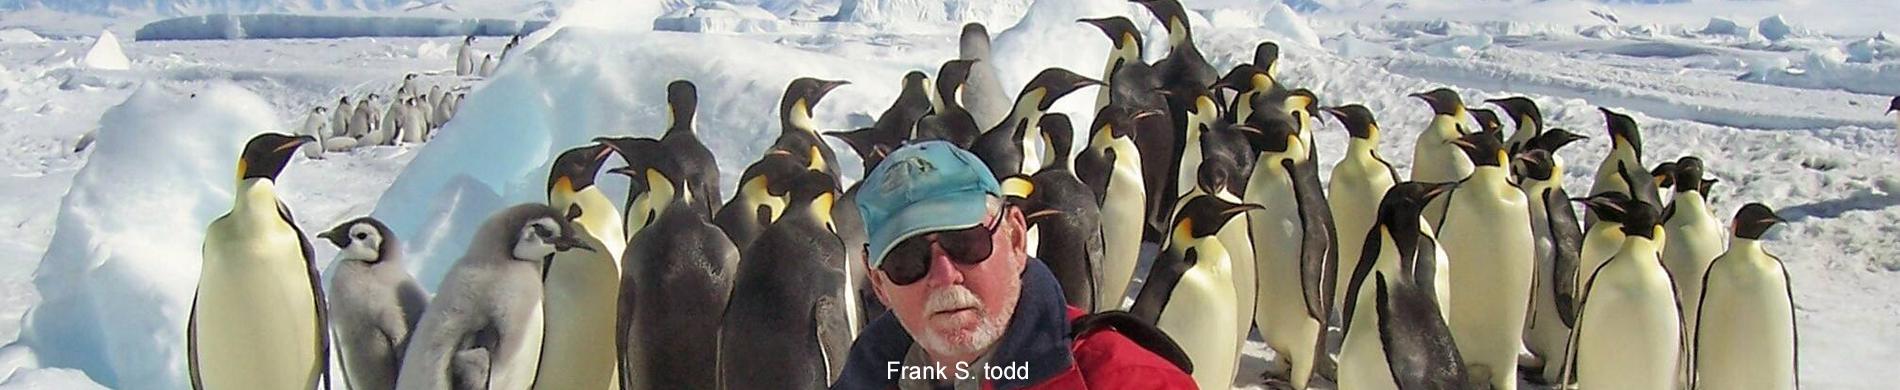 Keizersinguïns op Antarctica met Frank Todd